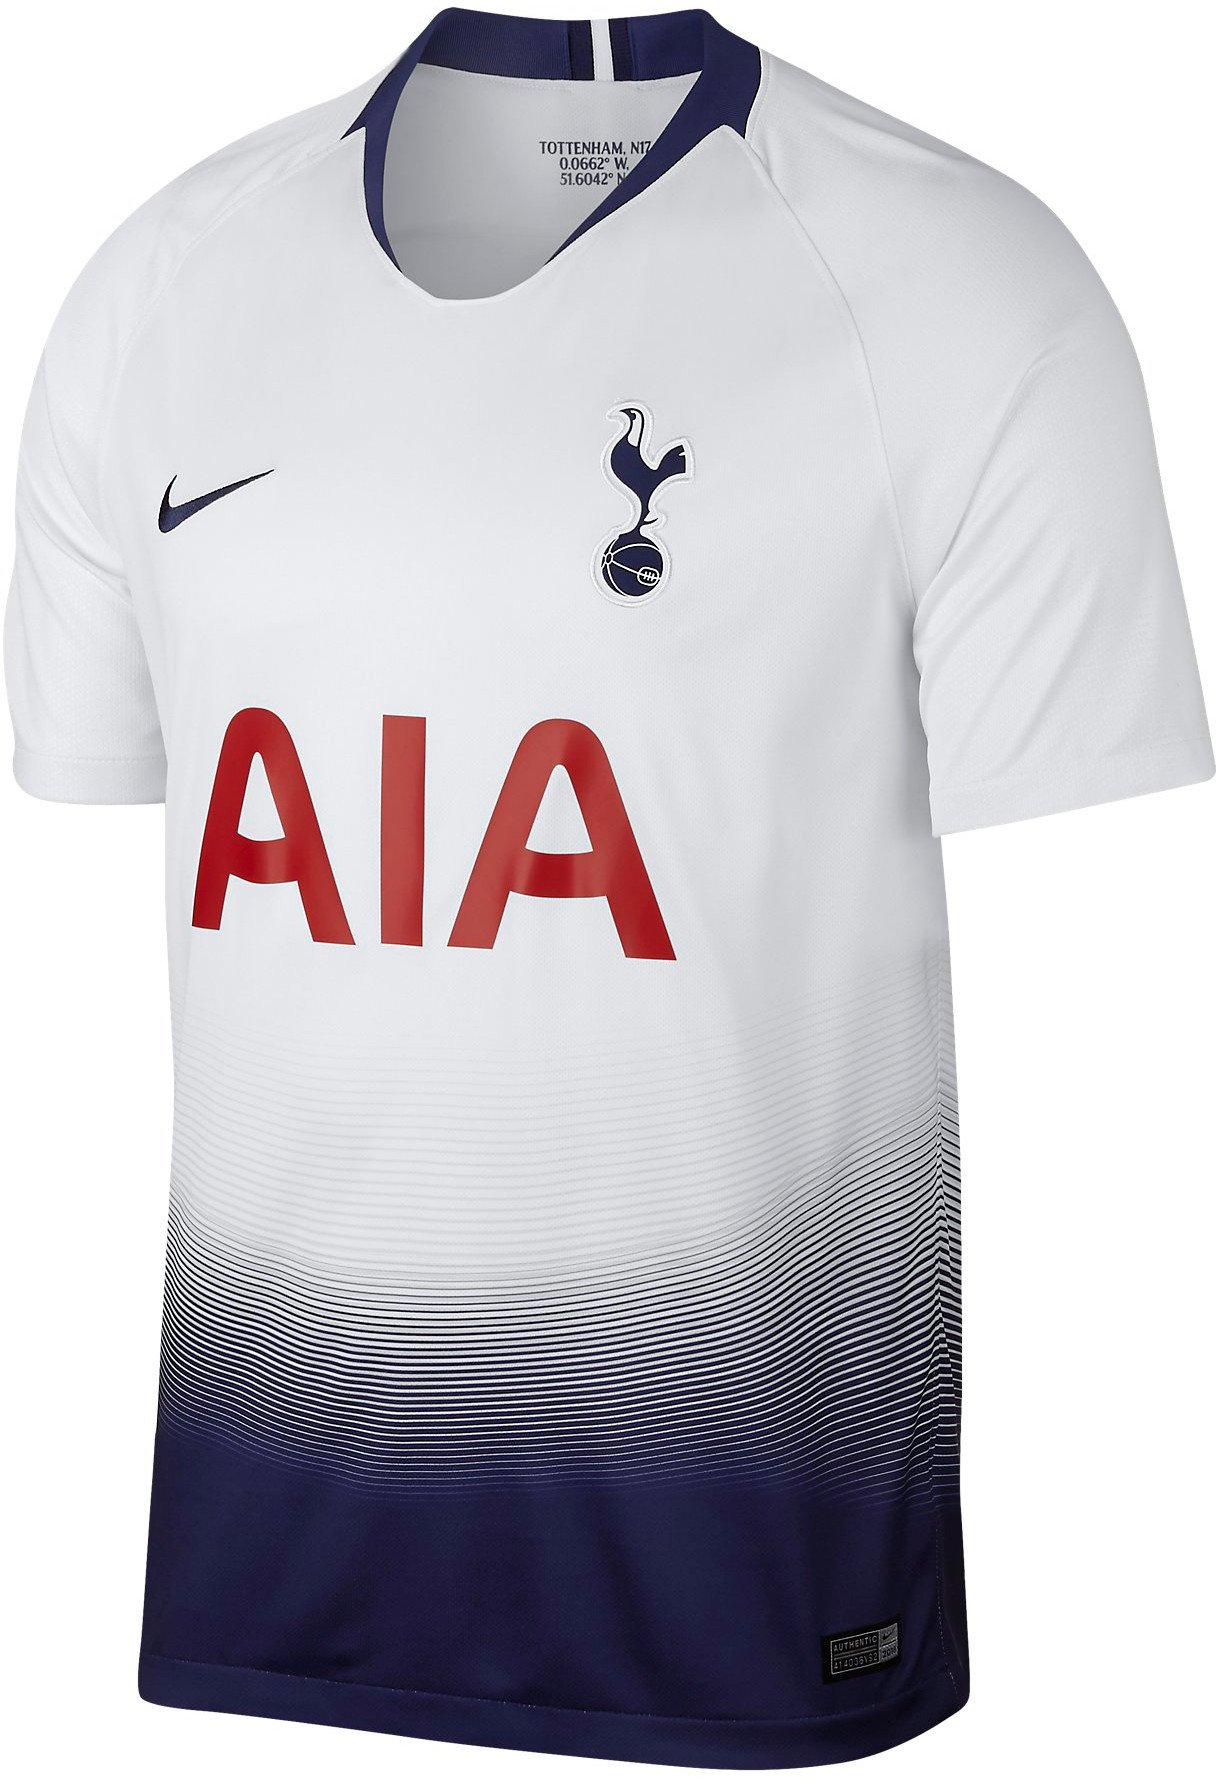 Replika pánského fotbalového dresu Nike Tottenham 2018/19